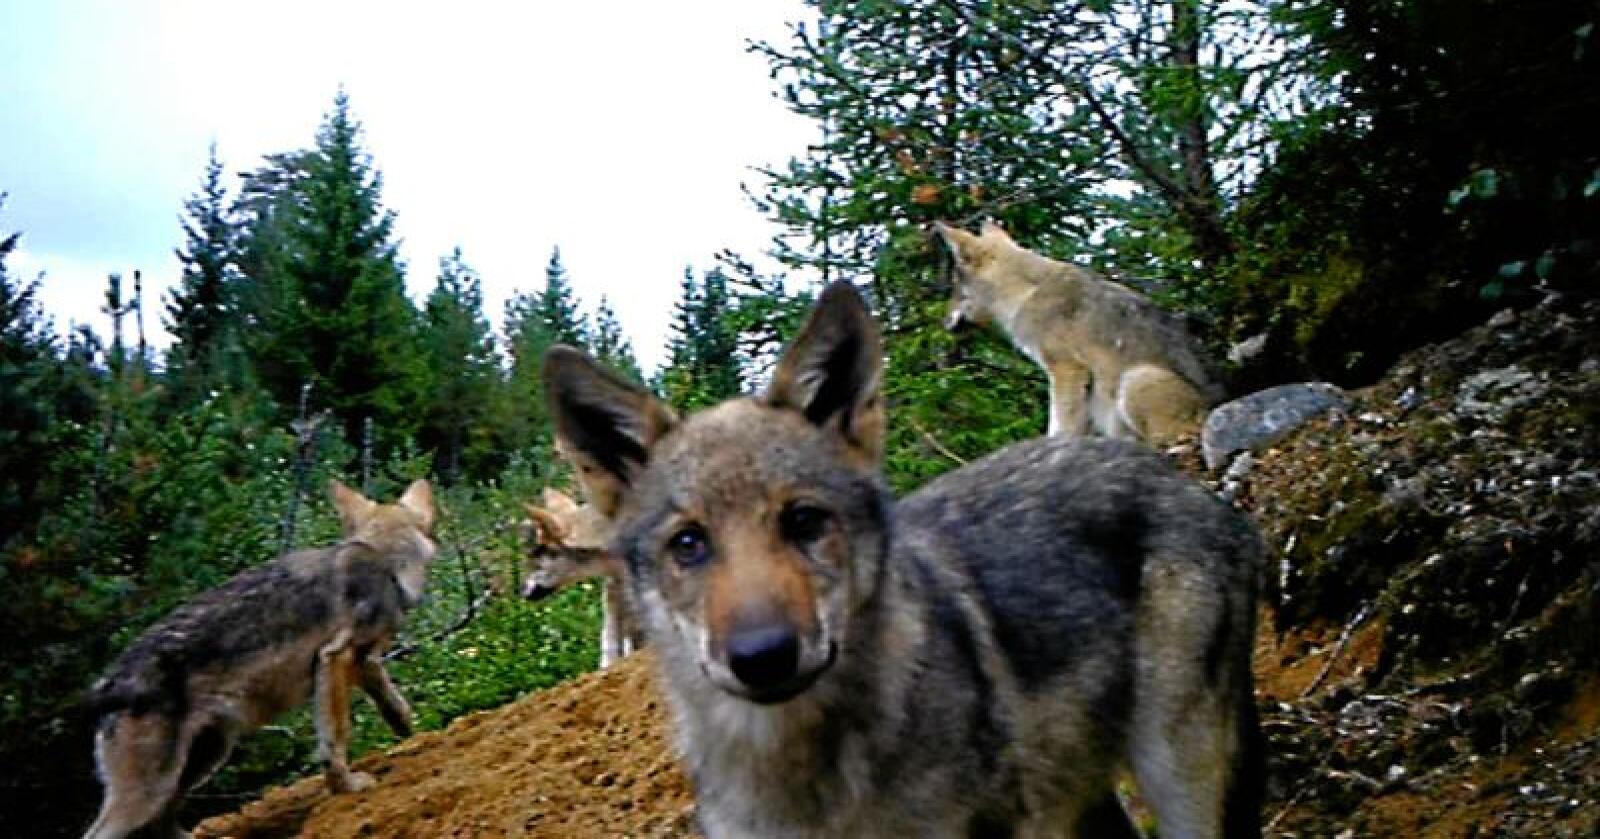 Undrande: Her ser vi fire ulvekvalpar, éin av dei heilt oppe i viltkameraet som er utstasjonert i Finnskogen. Foto: Skjermdump / Egil Tømte Austad / Kjell Skogsrud